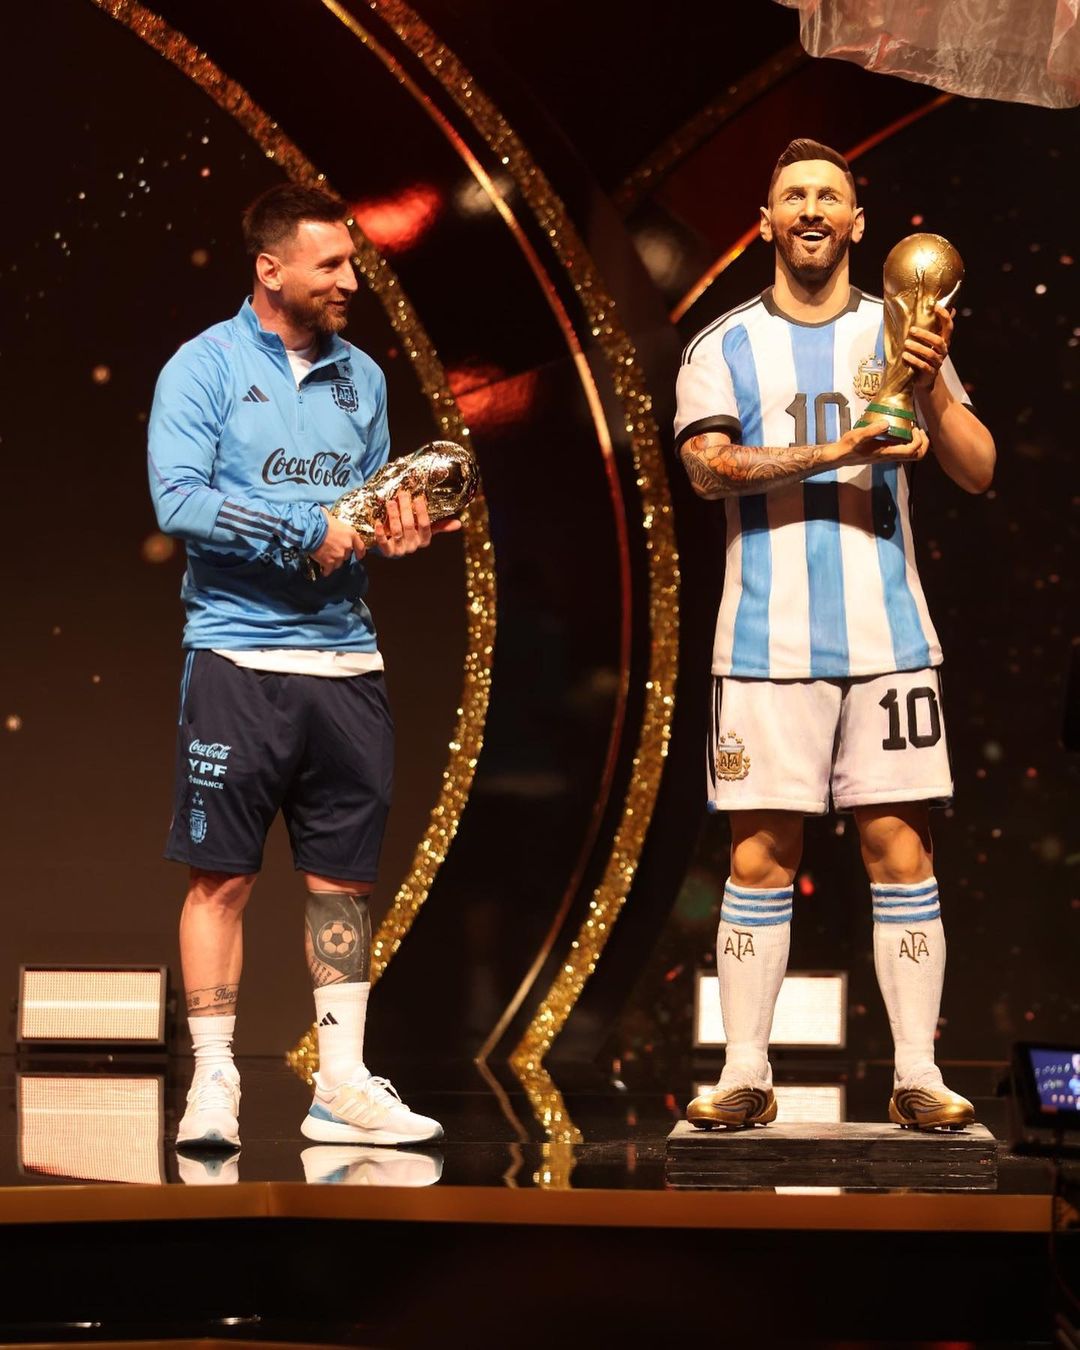 Dinilai Tak Mirip, Patung Lionel Messi di Argentina Jadi Bahan Ejekan